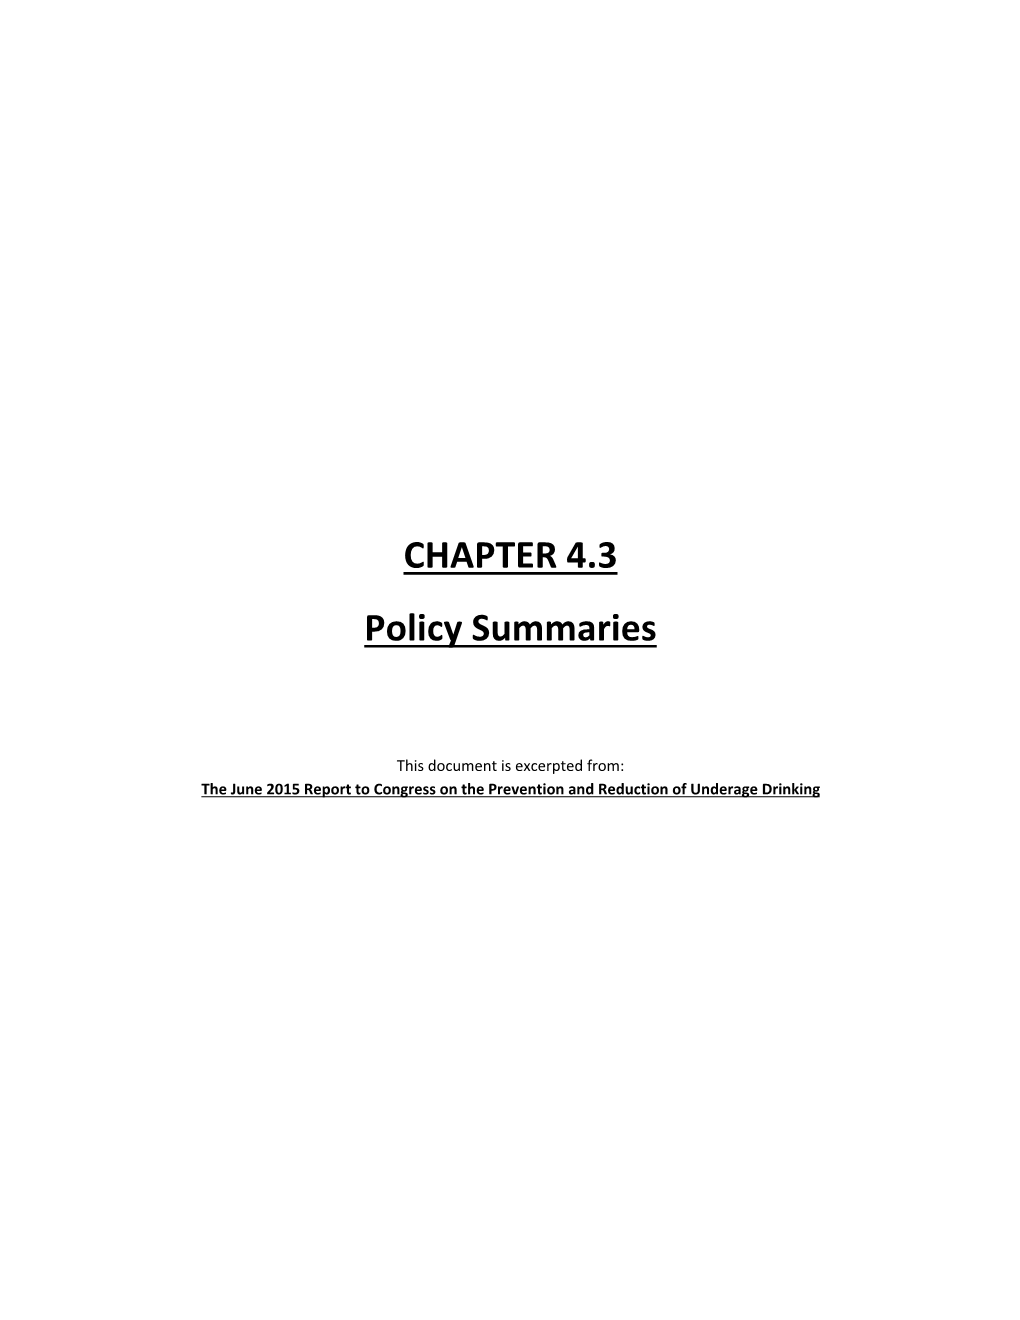 Policy Summaries